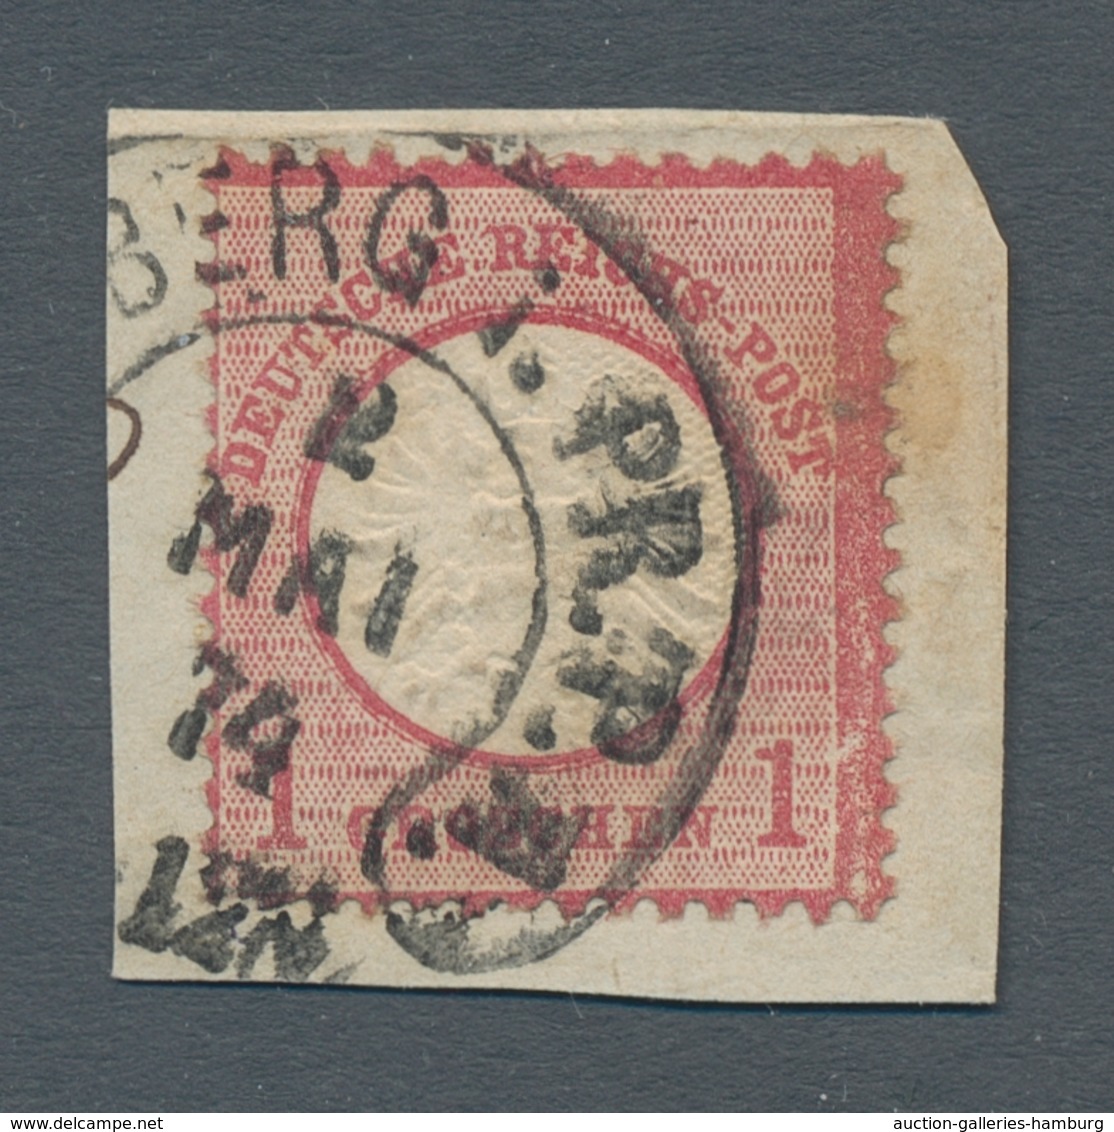 Nachlässe: HUFEISENSTEMPEL 1867 – 1875 (ca.): Hübsche Sammlung mit ca. 375 Marken oder Briefstücken